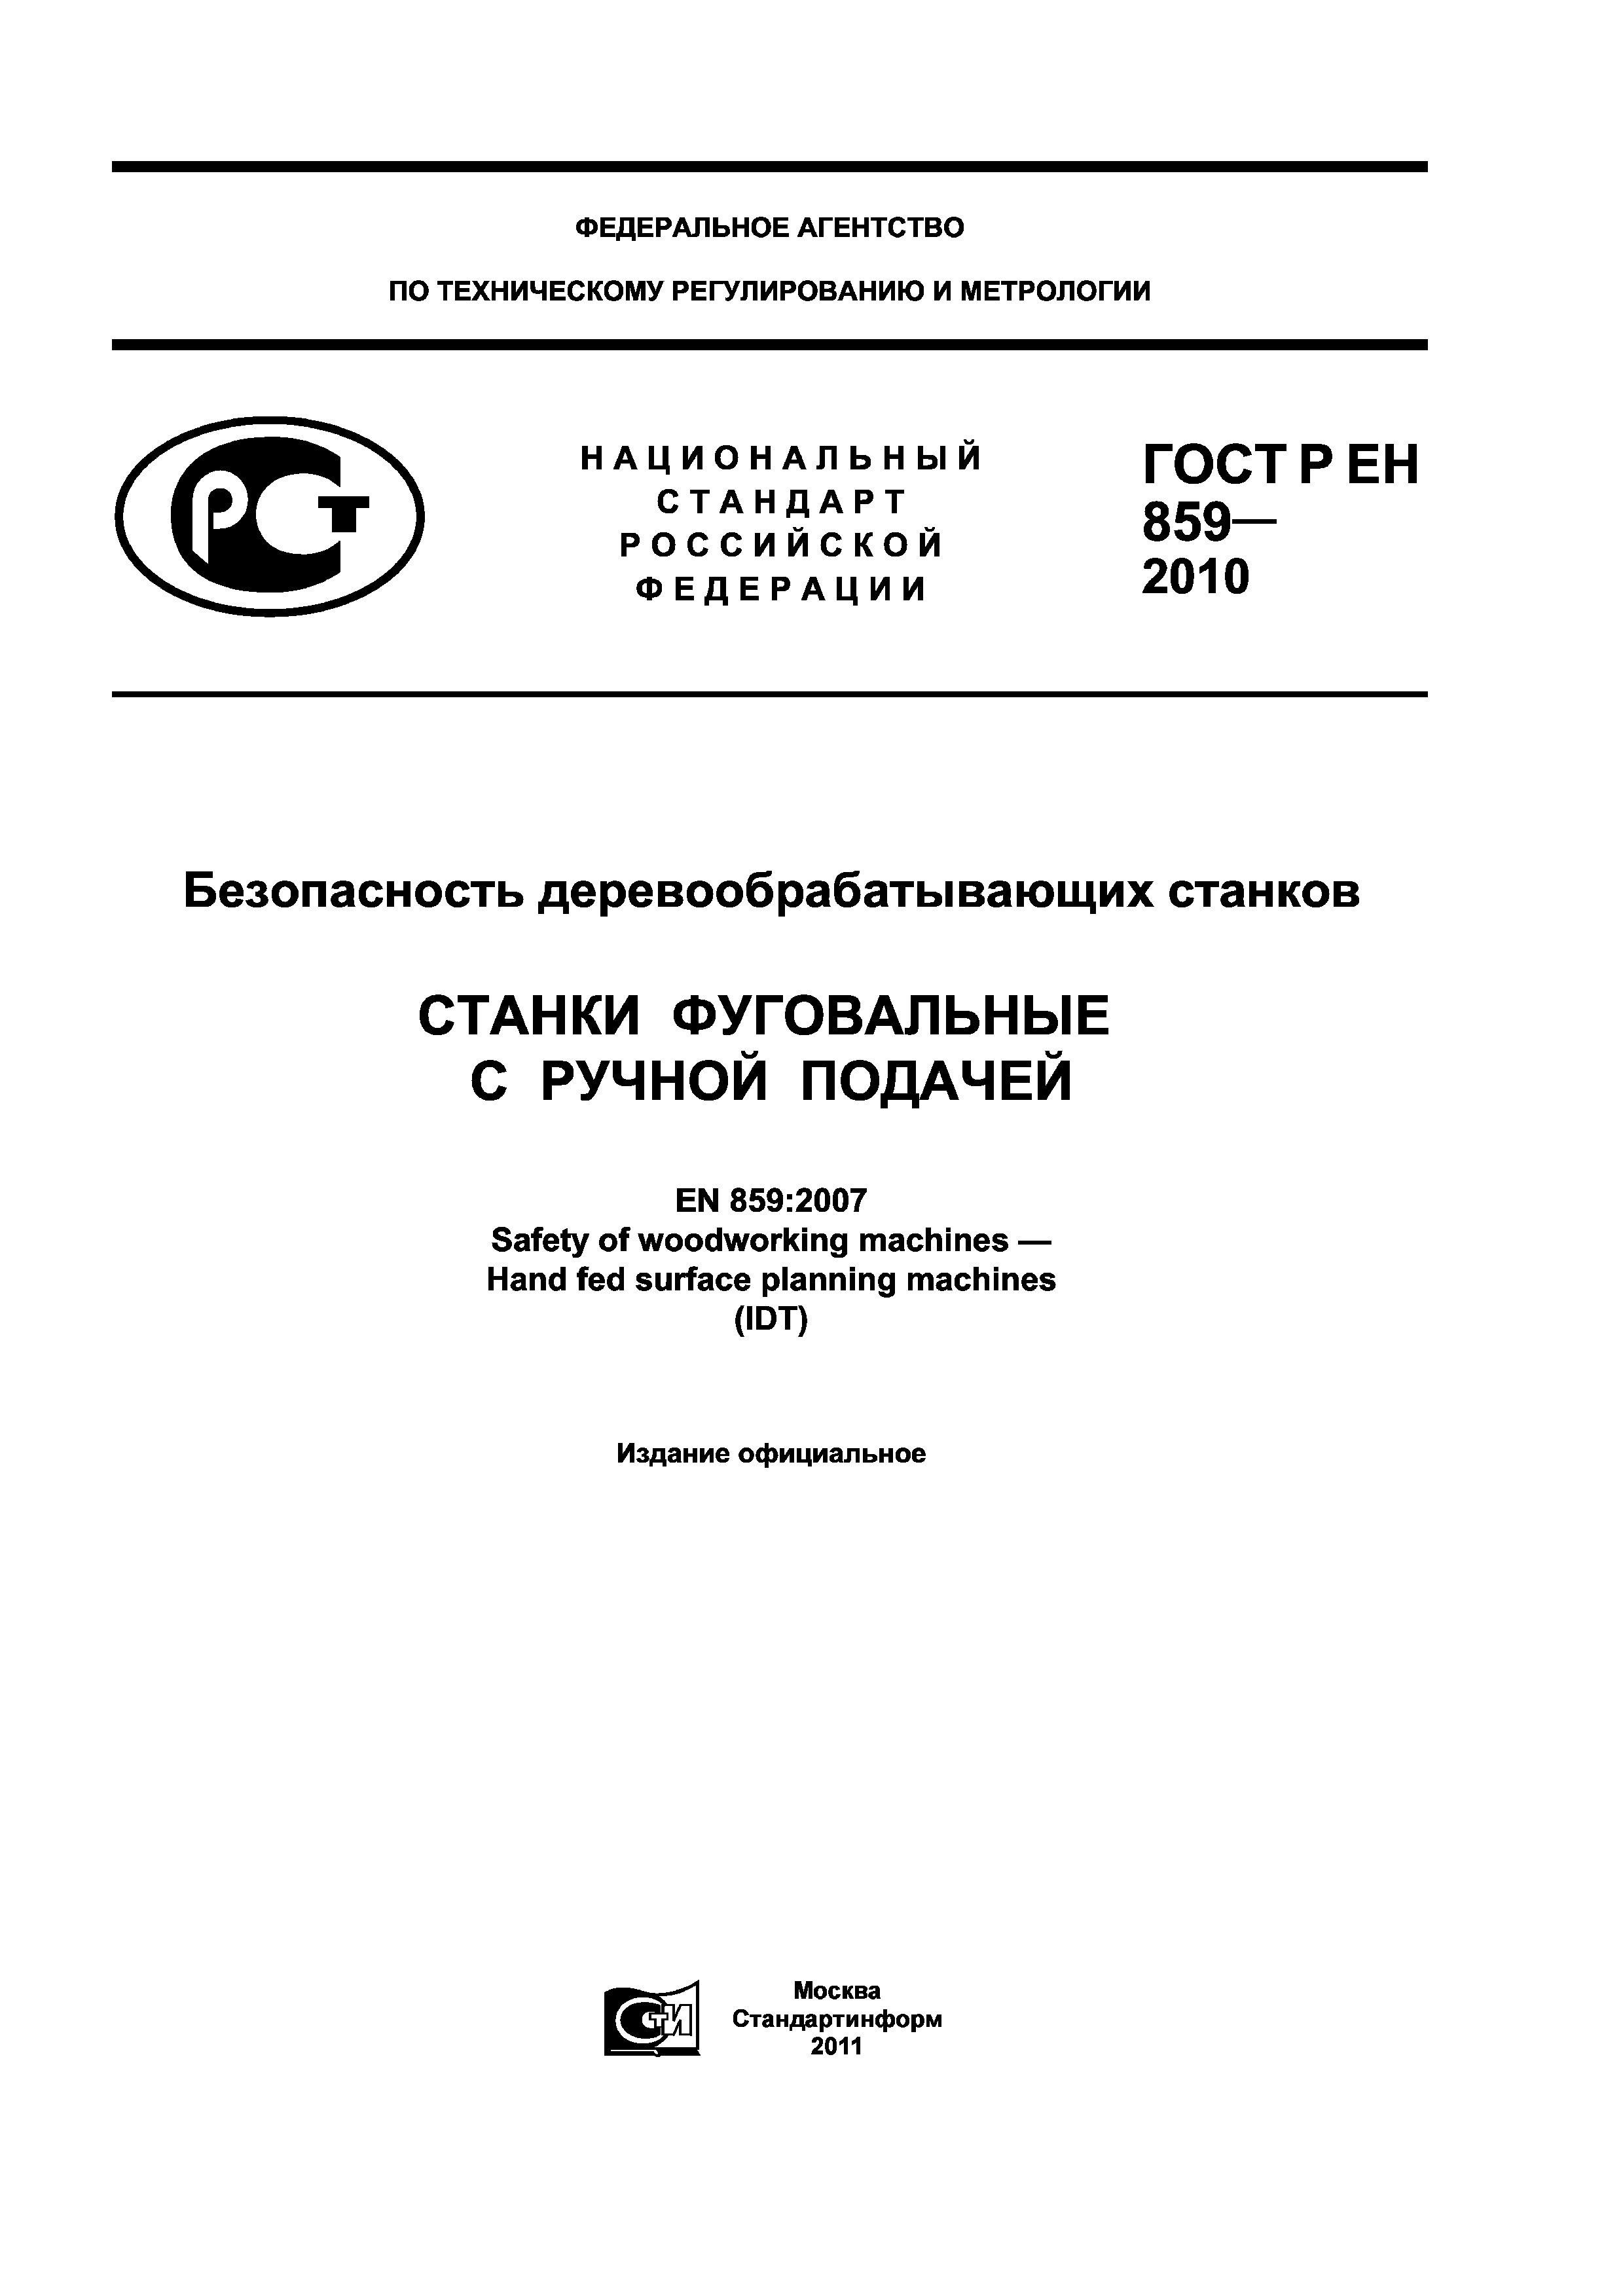 ГОСТ Р ЕН 859-2010